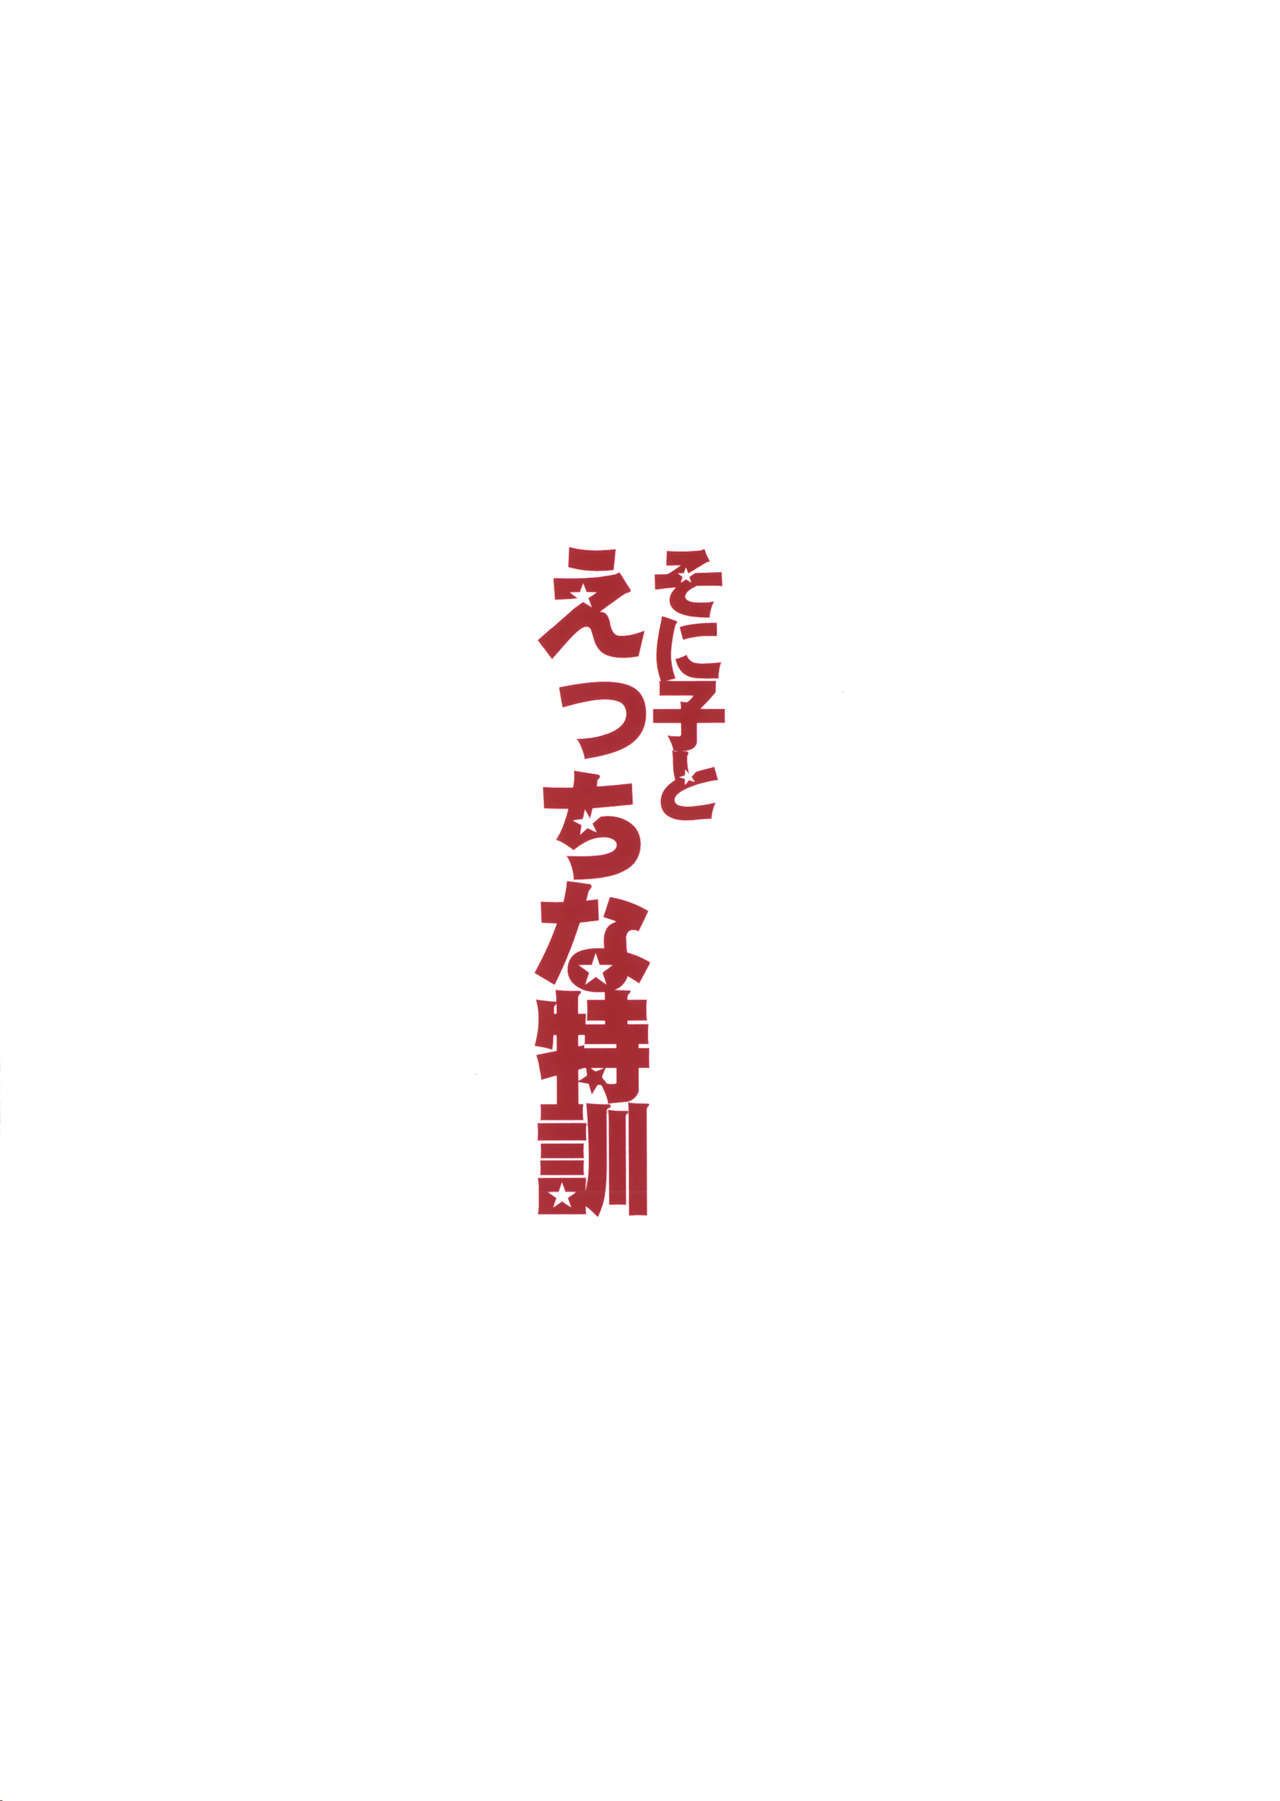 (sc63) Đỏ vương miện (ishigami kazui) Sonico phải Ecchi na tokkun Đông Huấn luyện với Sonico (super sonico) biribiri